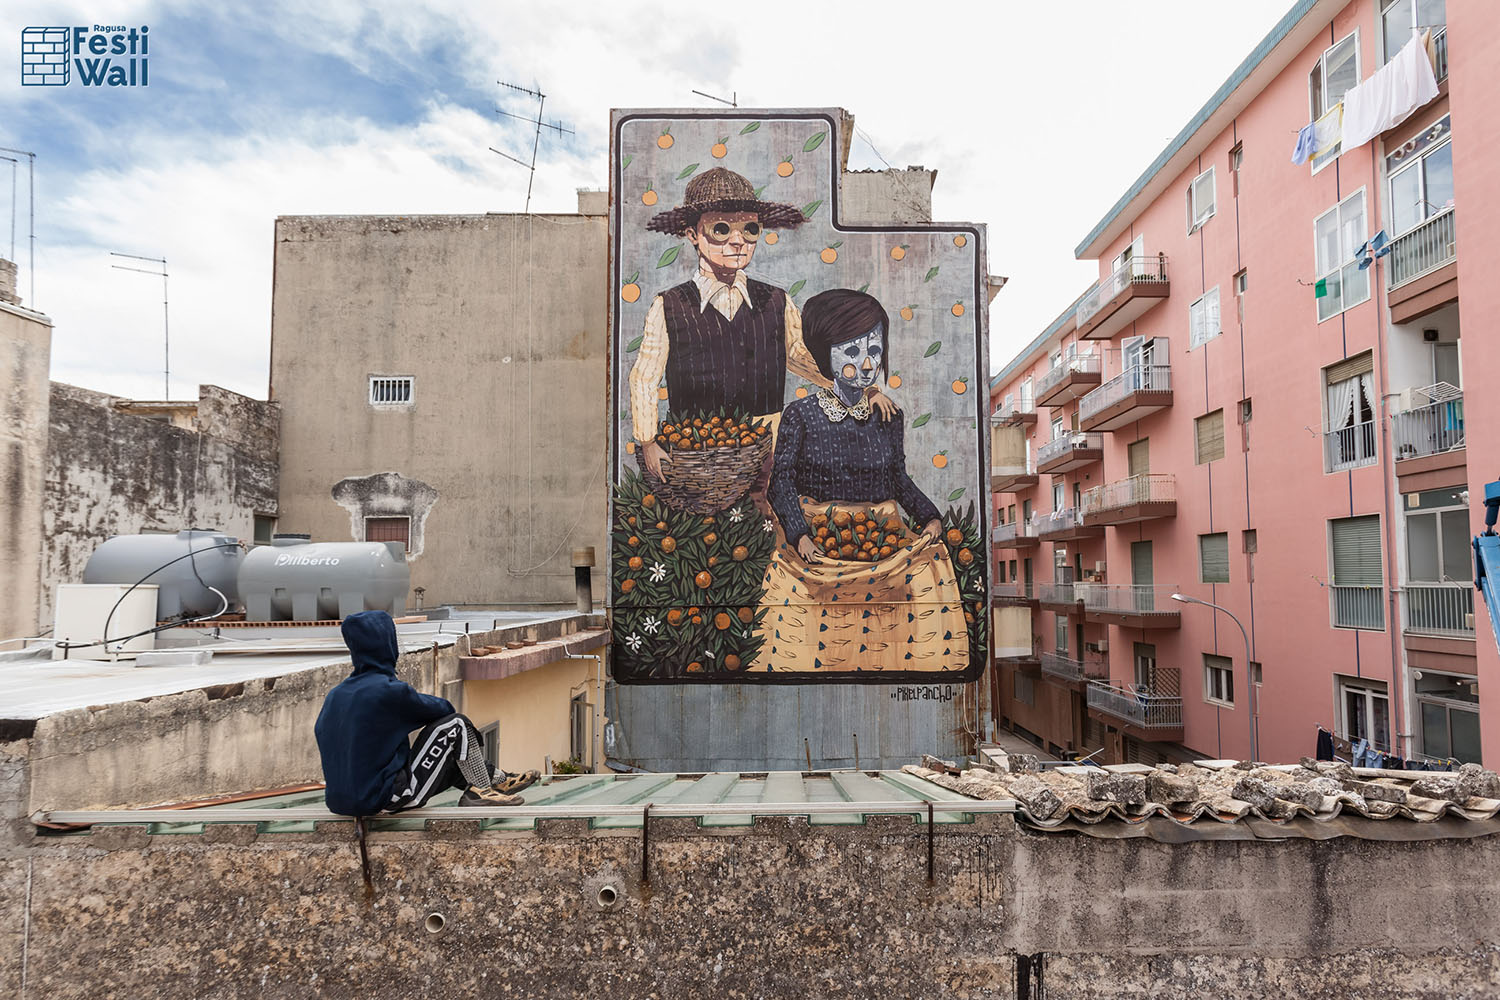  5 (nuove) ragioni per visitare Ragusa con gli occhi aperti sulla street art